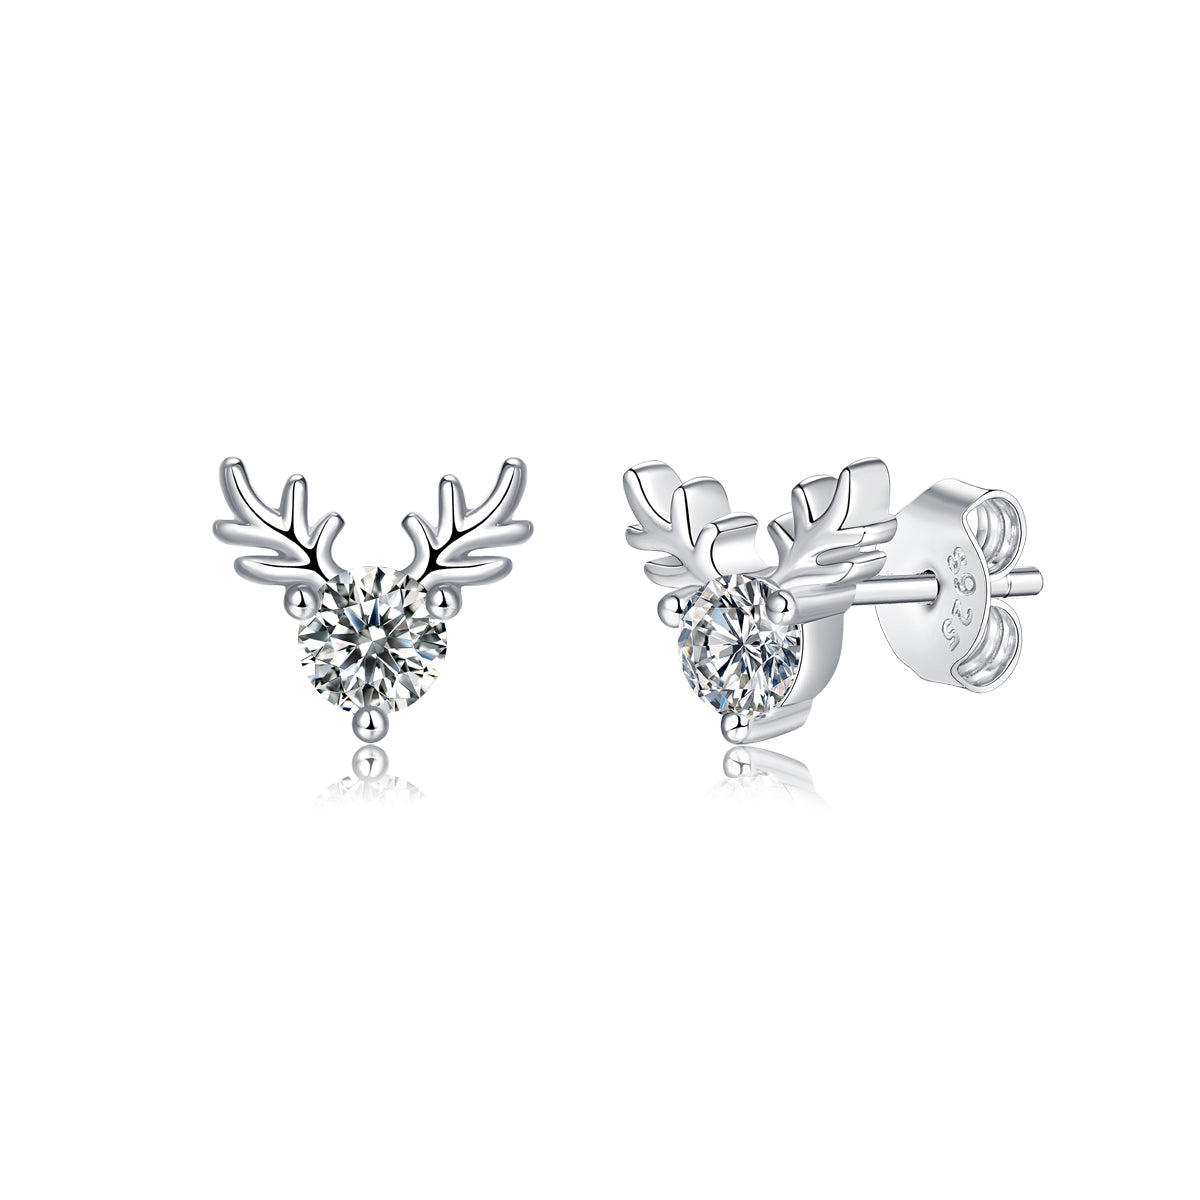 FairyLocus "Christmas Elk" Classic Round Cut Moissanite Diamond Stud Earrings D Color VVS1 FLZZERMS07 FairyLocus